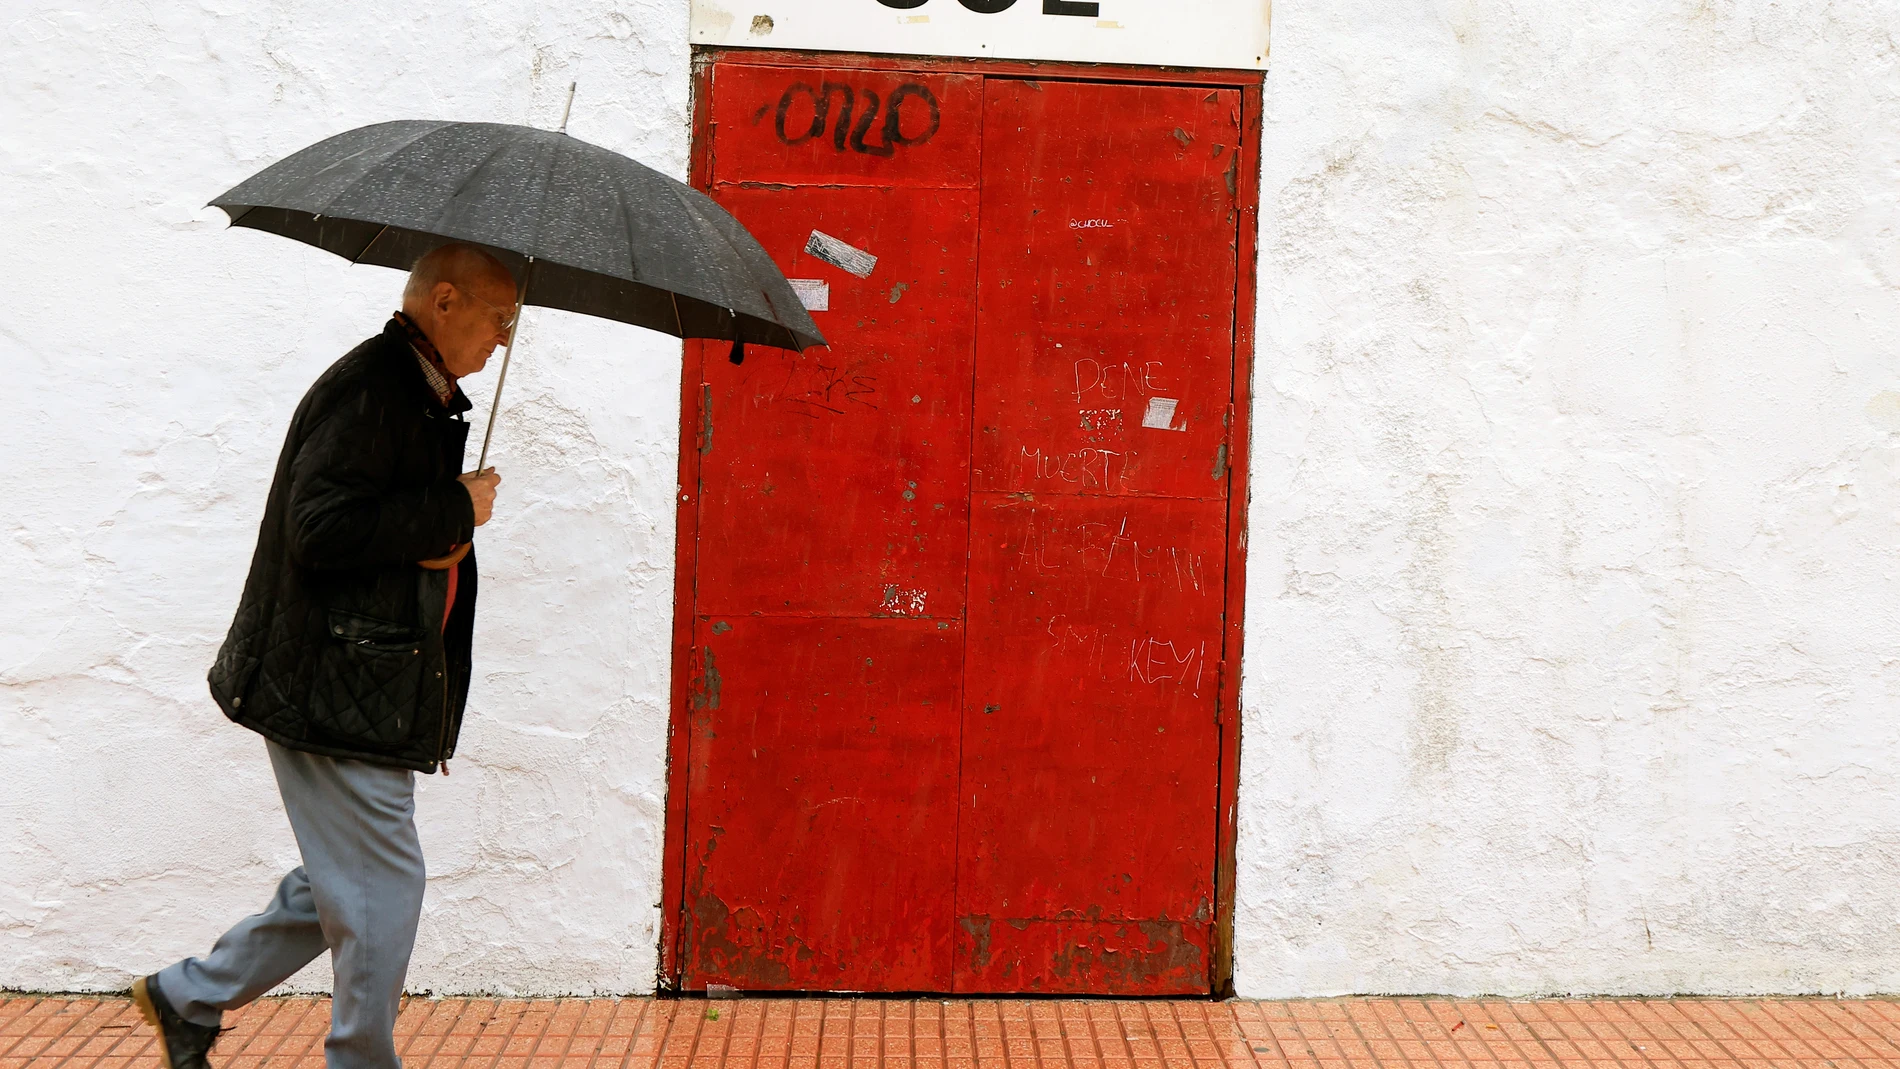 Un hombre pasa ante una de las puertas de acceso a la Plaza de Toros de Castellón, cerrada, tras la suspensión del festejo de rejones anunciado para este lunes